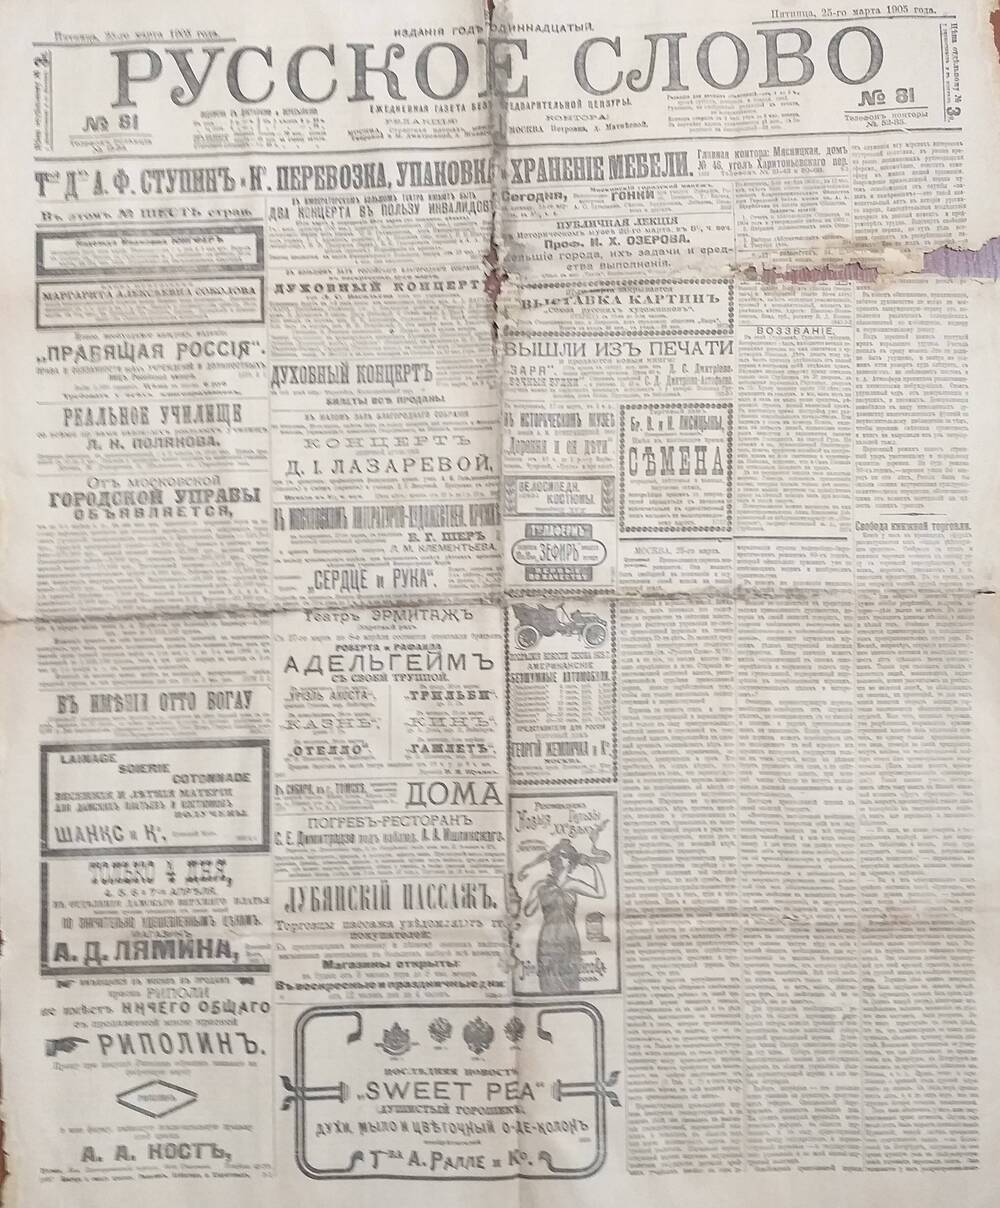 Газета Русское слово № 81 от 25.03.1905 года.